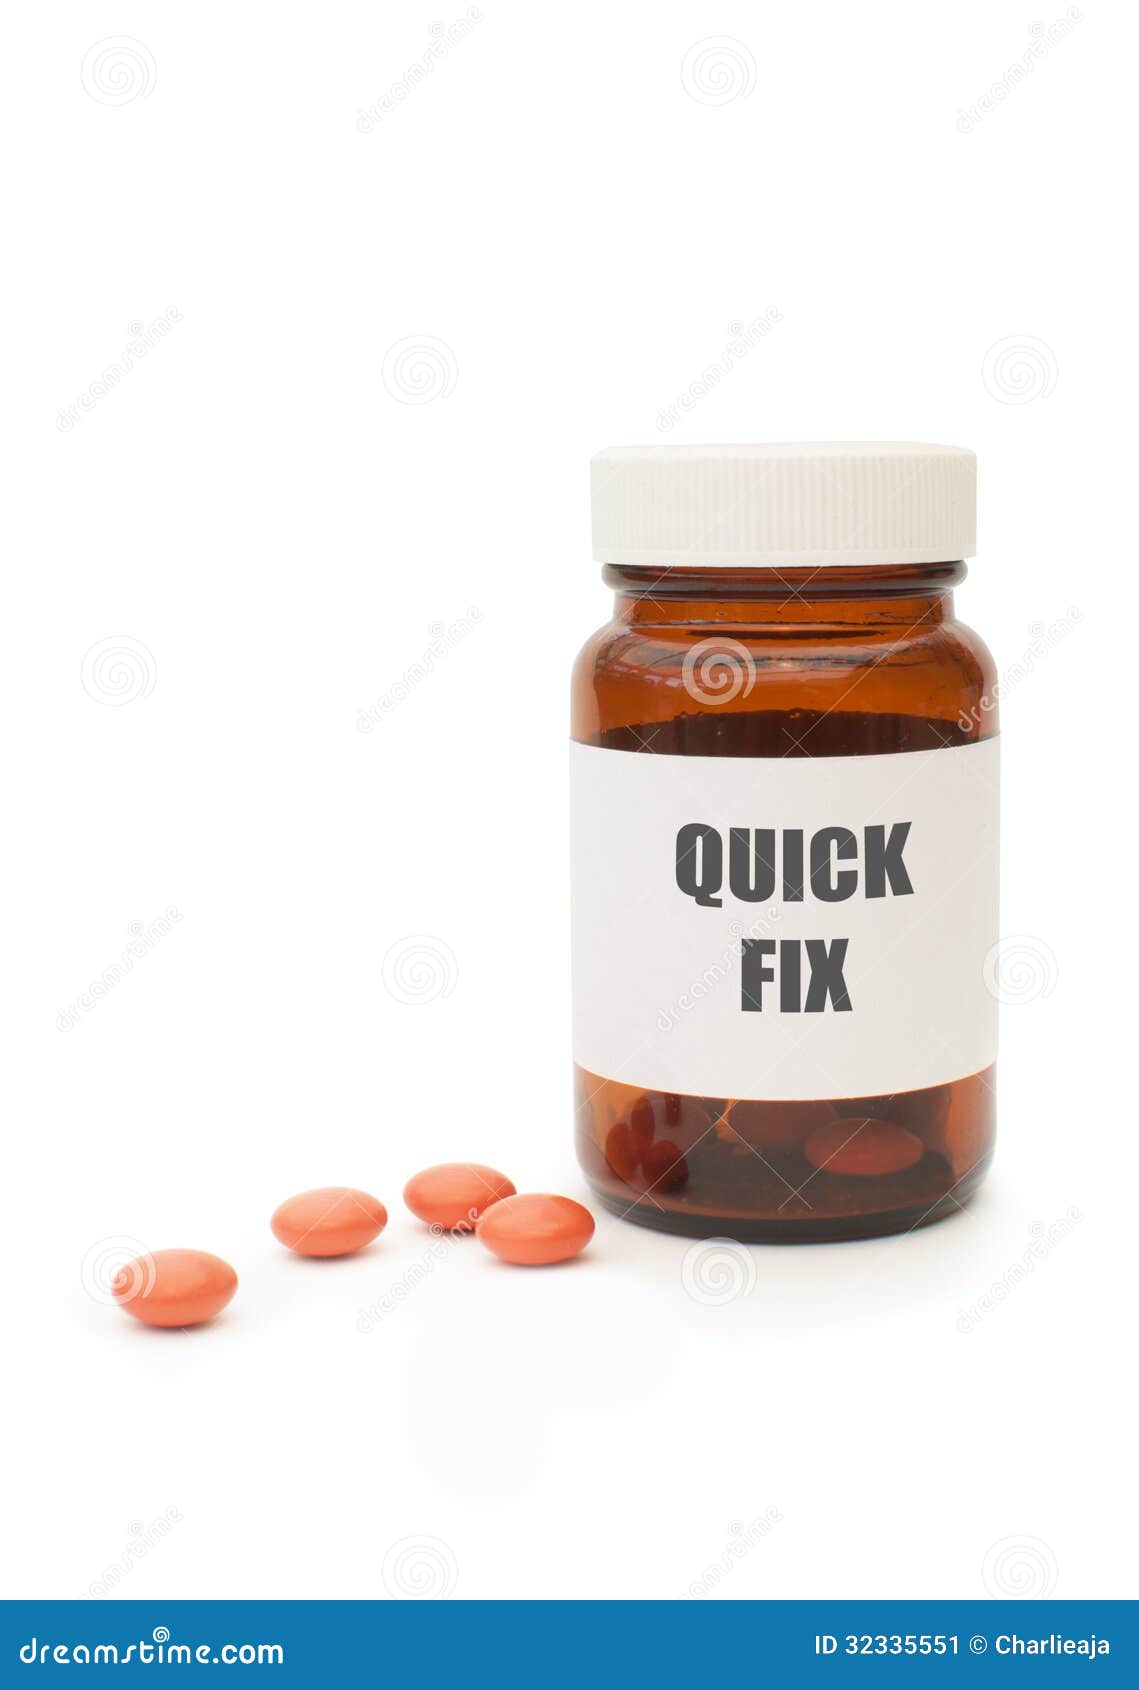 quick fix pills